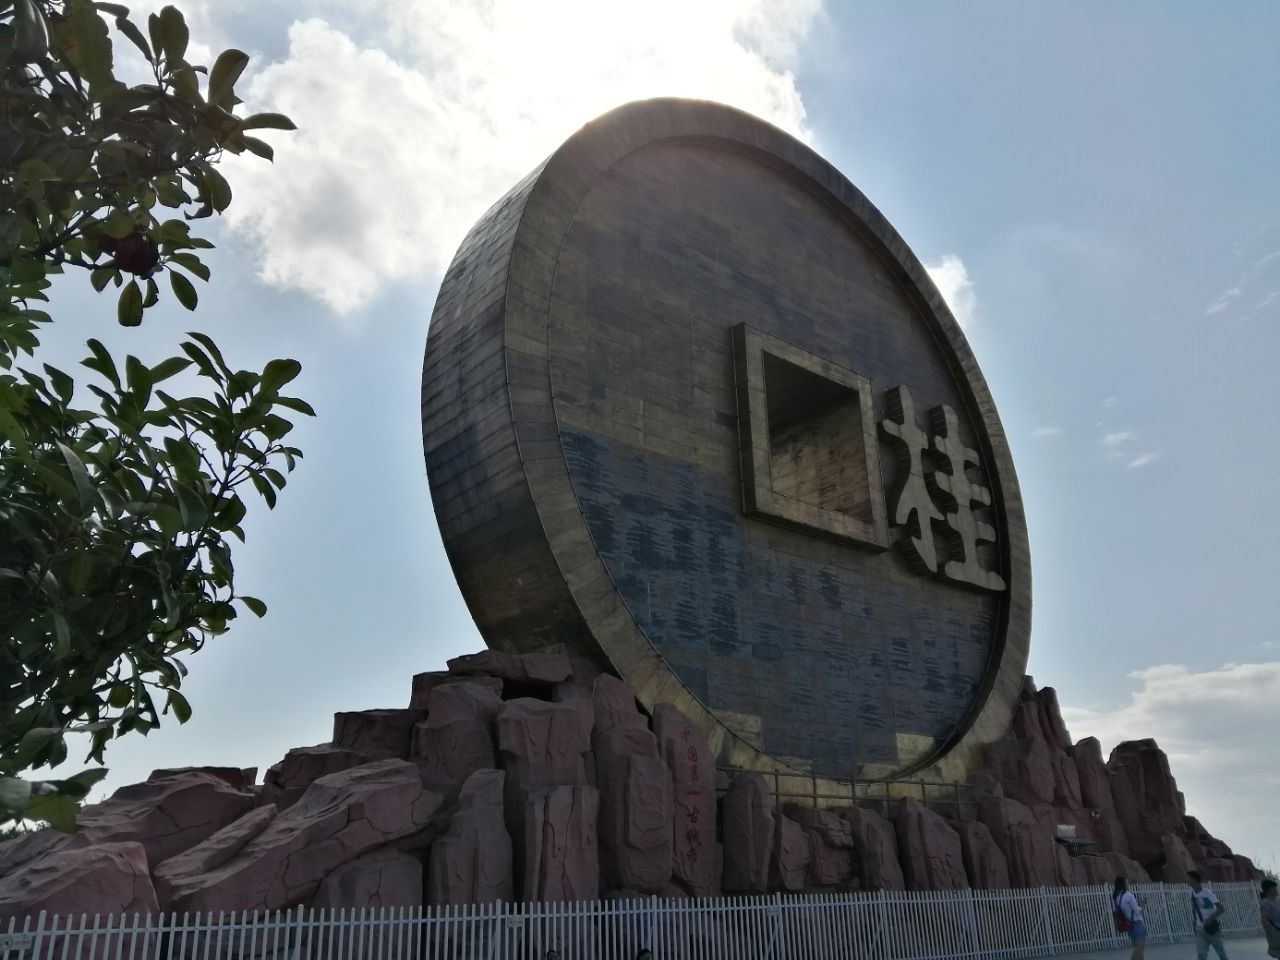 桂阳宝山公园图片